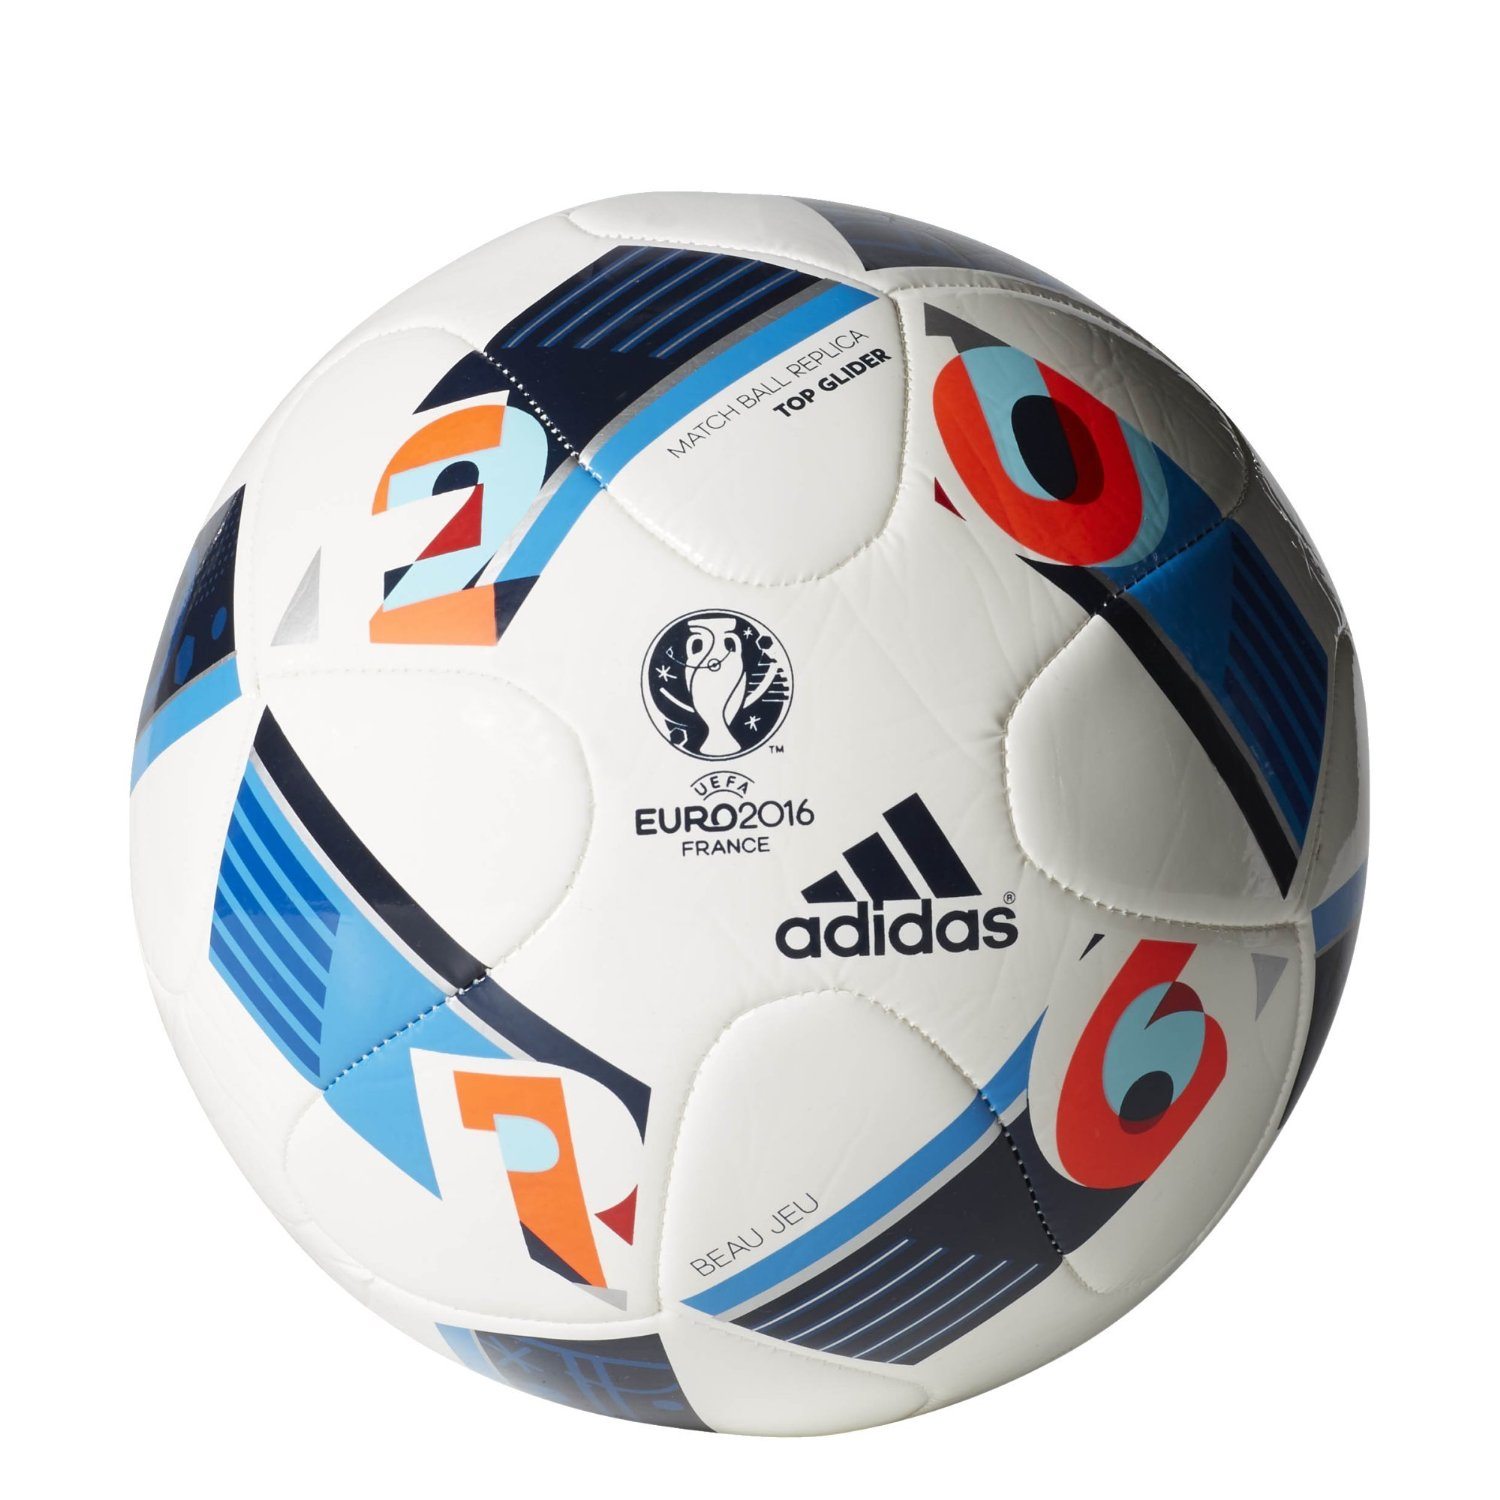 euro 16 replica soccer ball